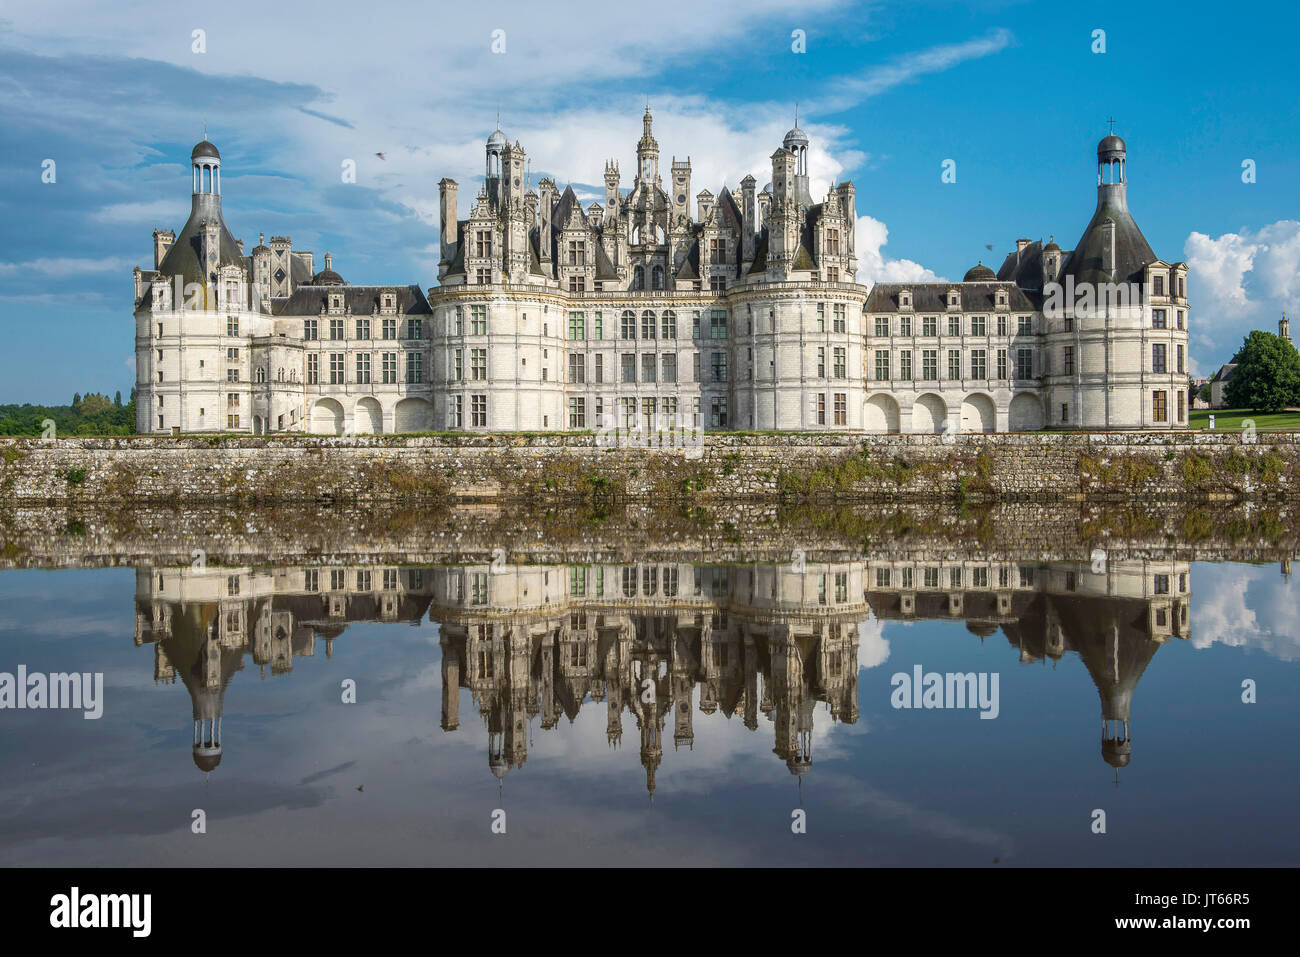 El "château de Chambord' castillo, Sitio del Patrimonio Mundial de la UNESCO. El château de Chambord pertenece a los castillos del Valle del Loira ('chateaux de la Loir Foto de stock